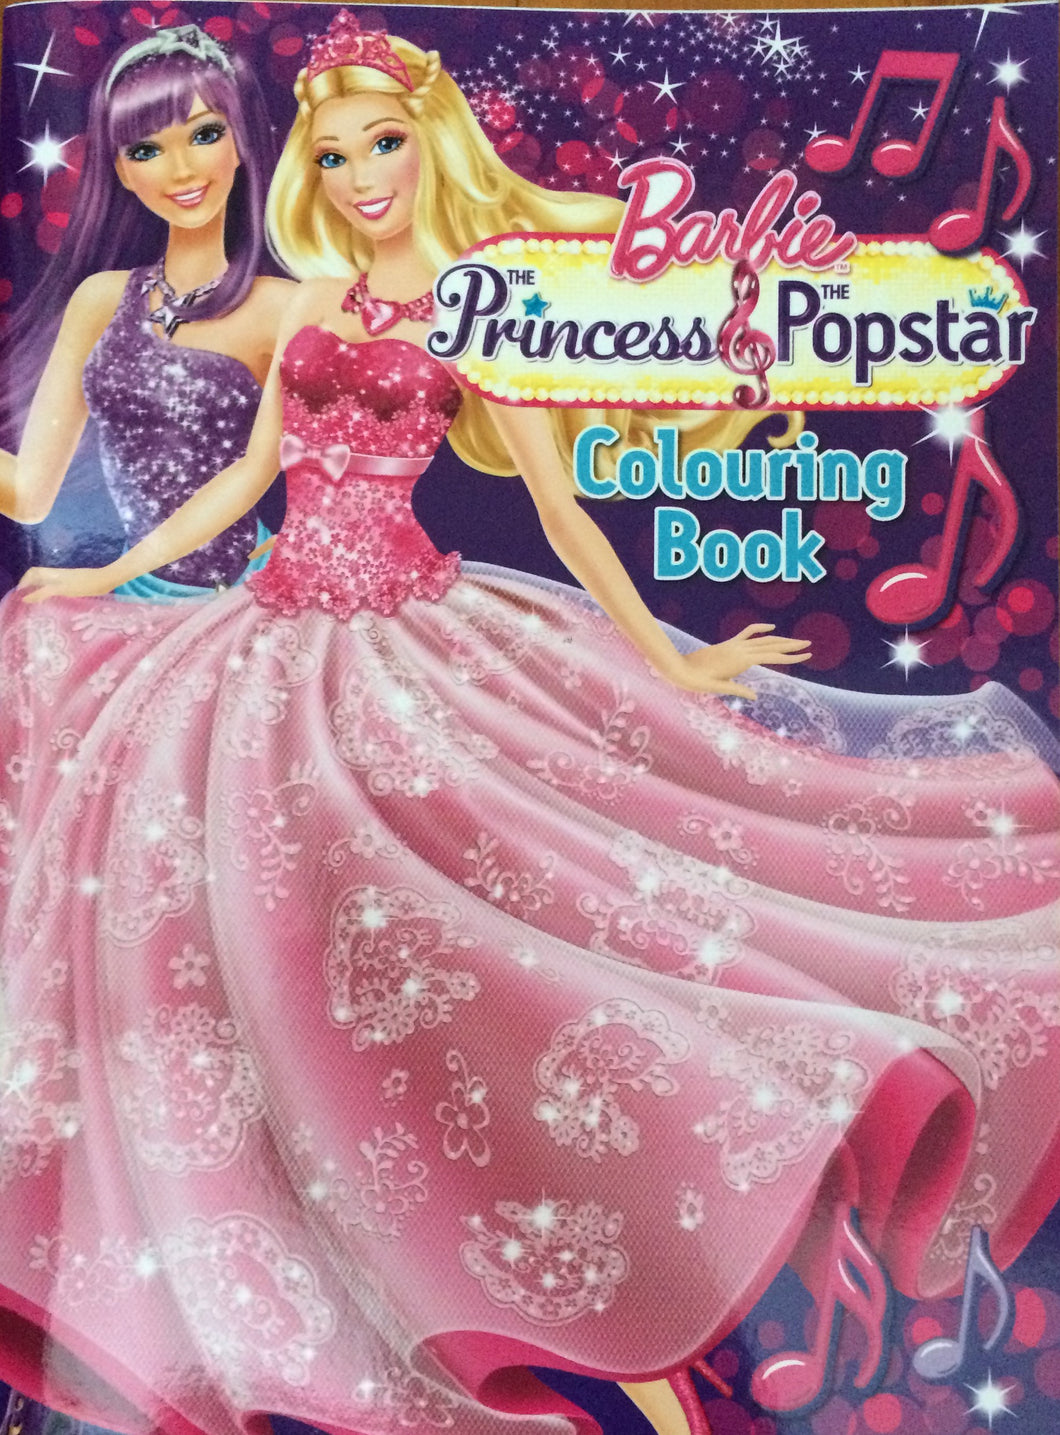 barbie and princess popstar